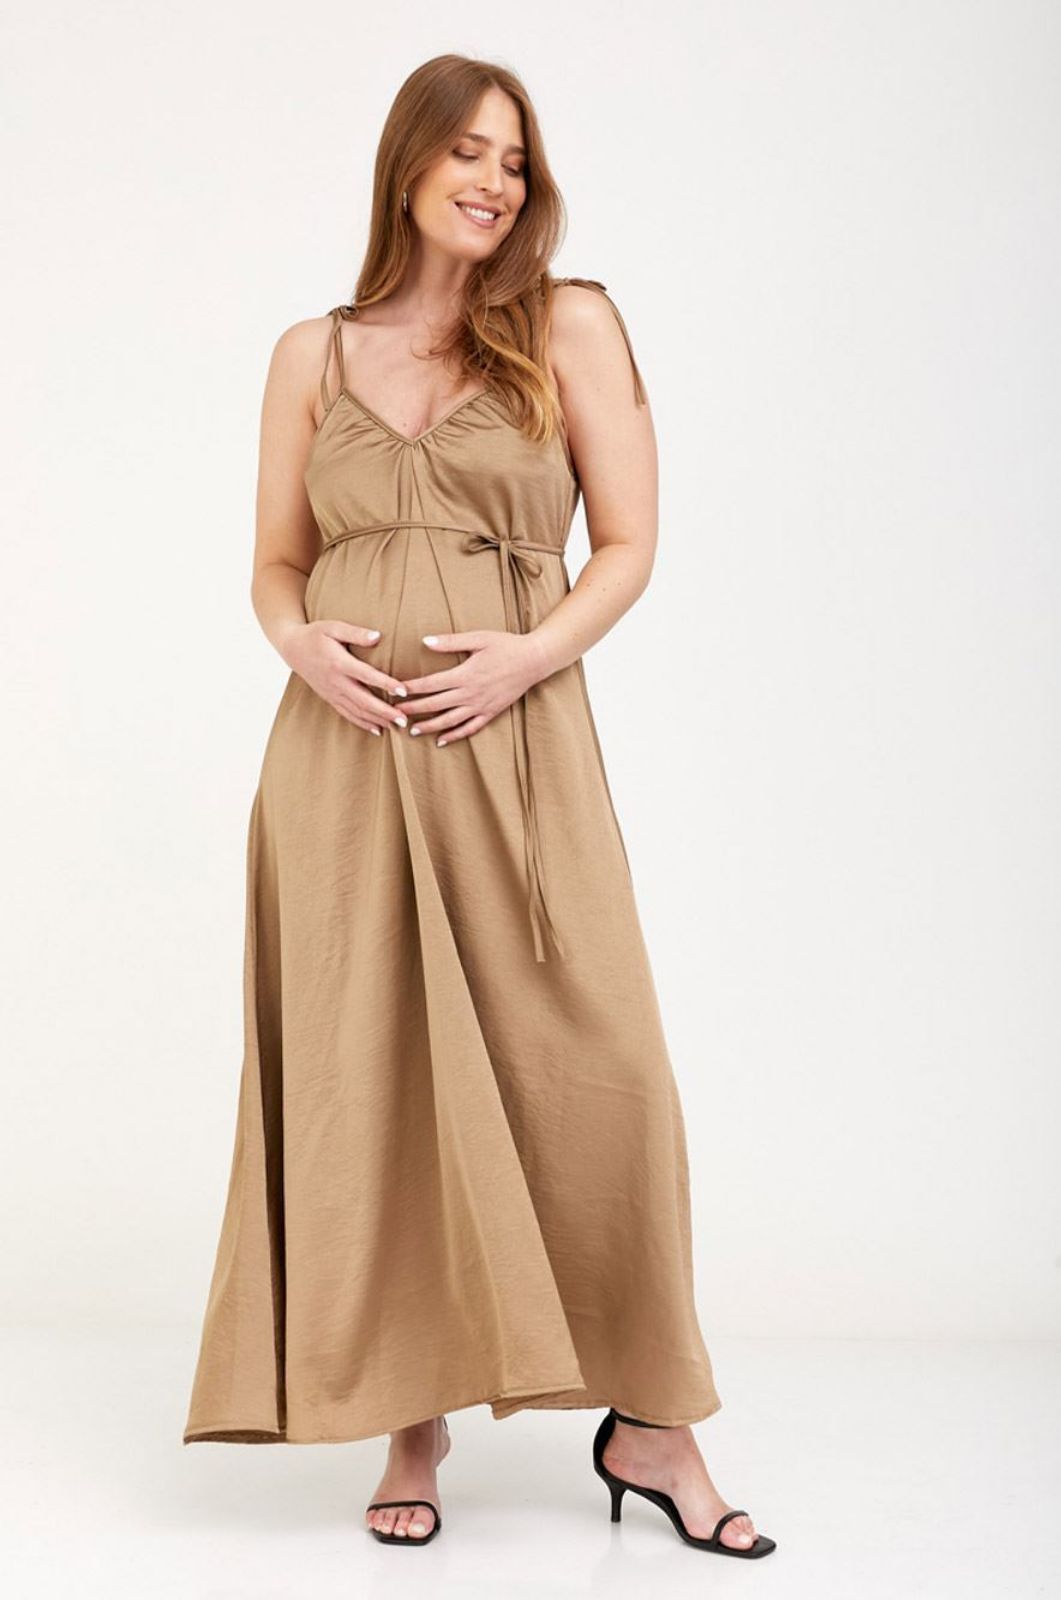 אישה לובשת שמלת הילה להריון נחושת